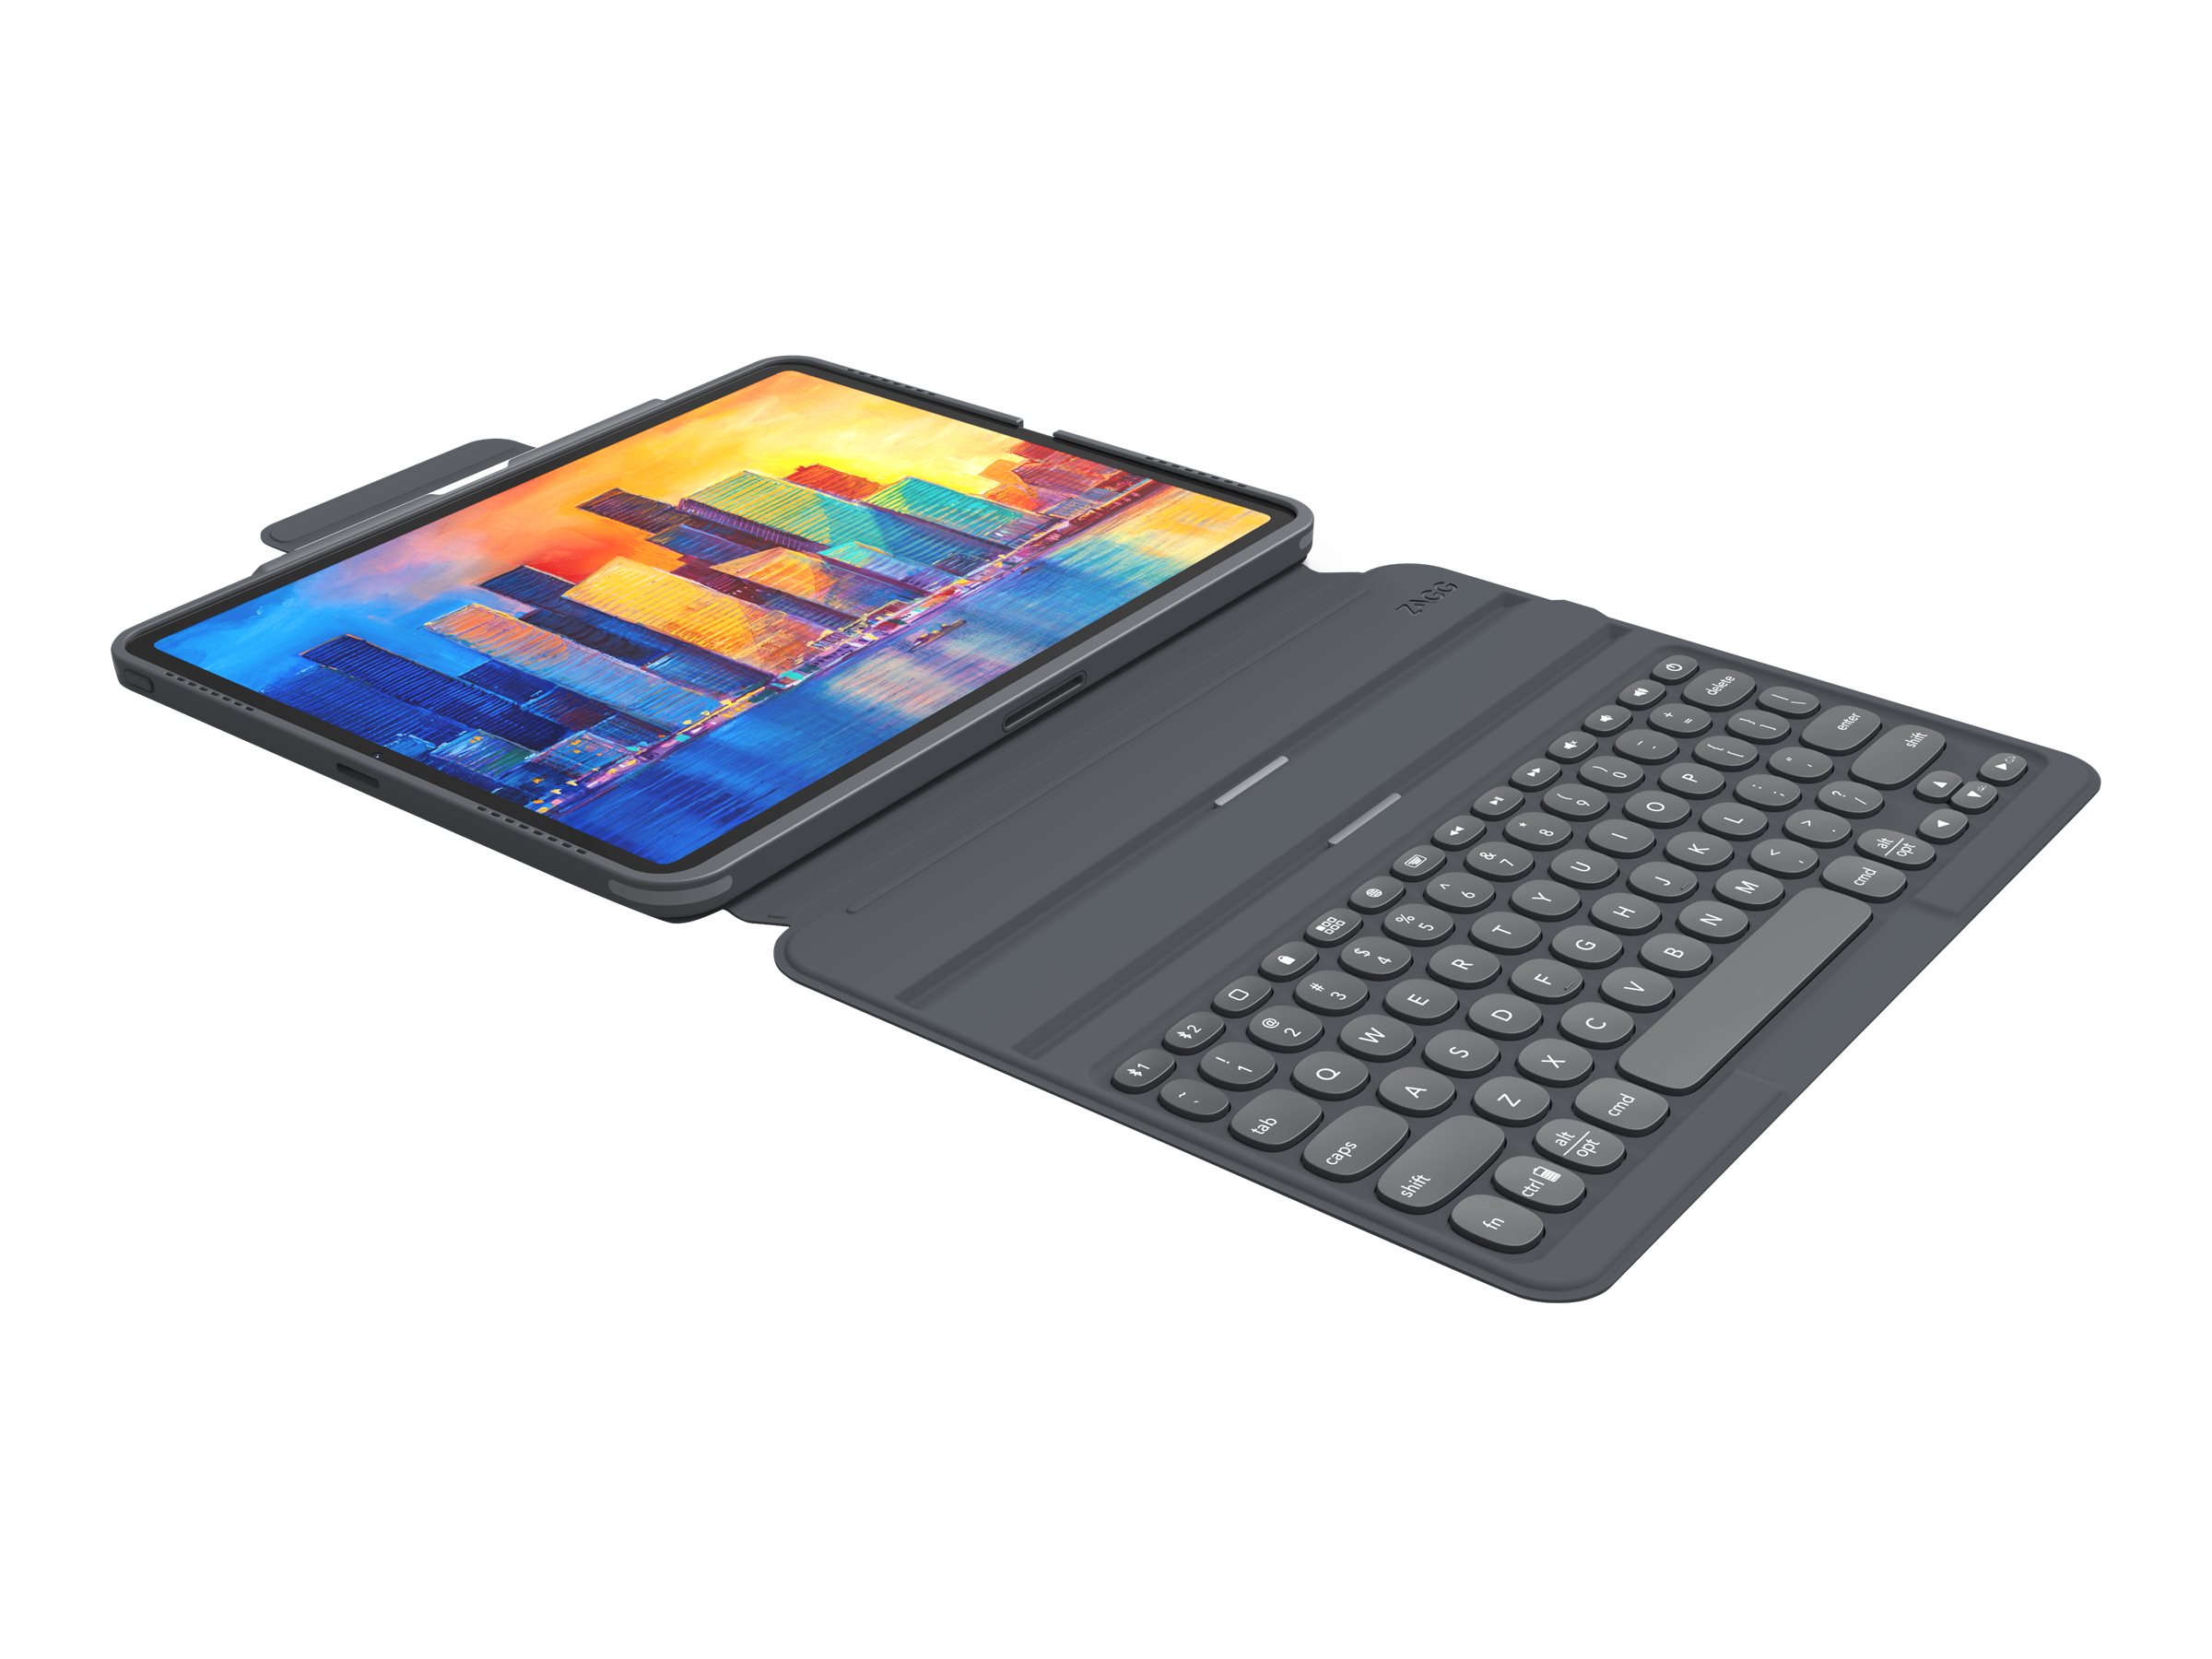 ZAGG Pro Keys - Tastatur und Foliohülle - hintergrundbeleuchtet - Bluetooth - Tschechisch - Schwarz/Grau Tastatur, Schwarz/Grau Gehäuse - für Apple 11-inch iPad Pro (1. Generation, 2. Generation, 3. Generation)